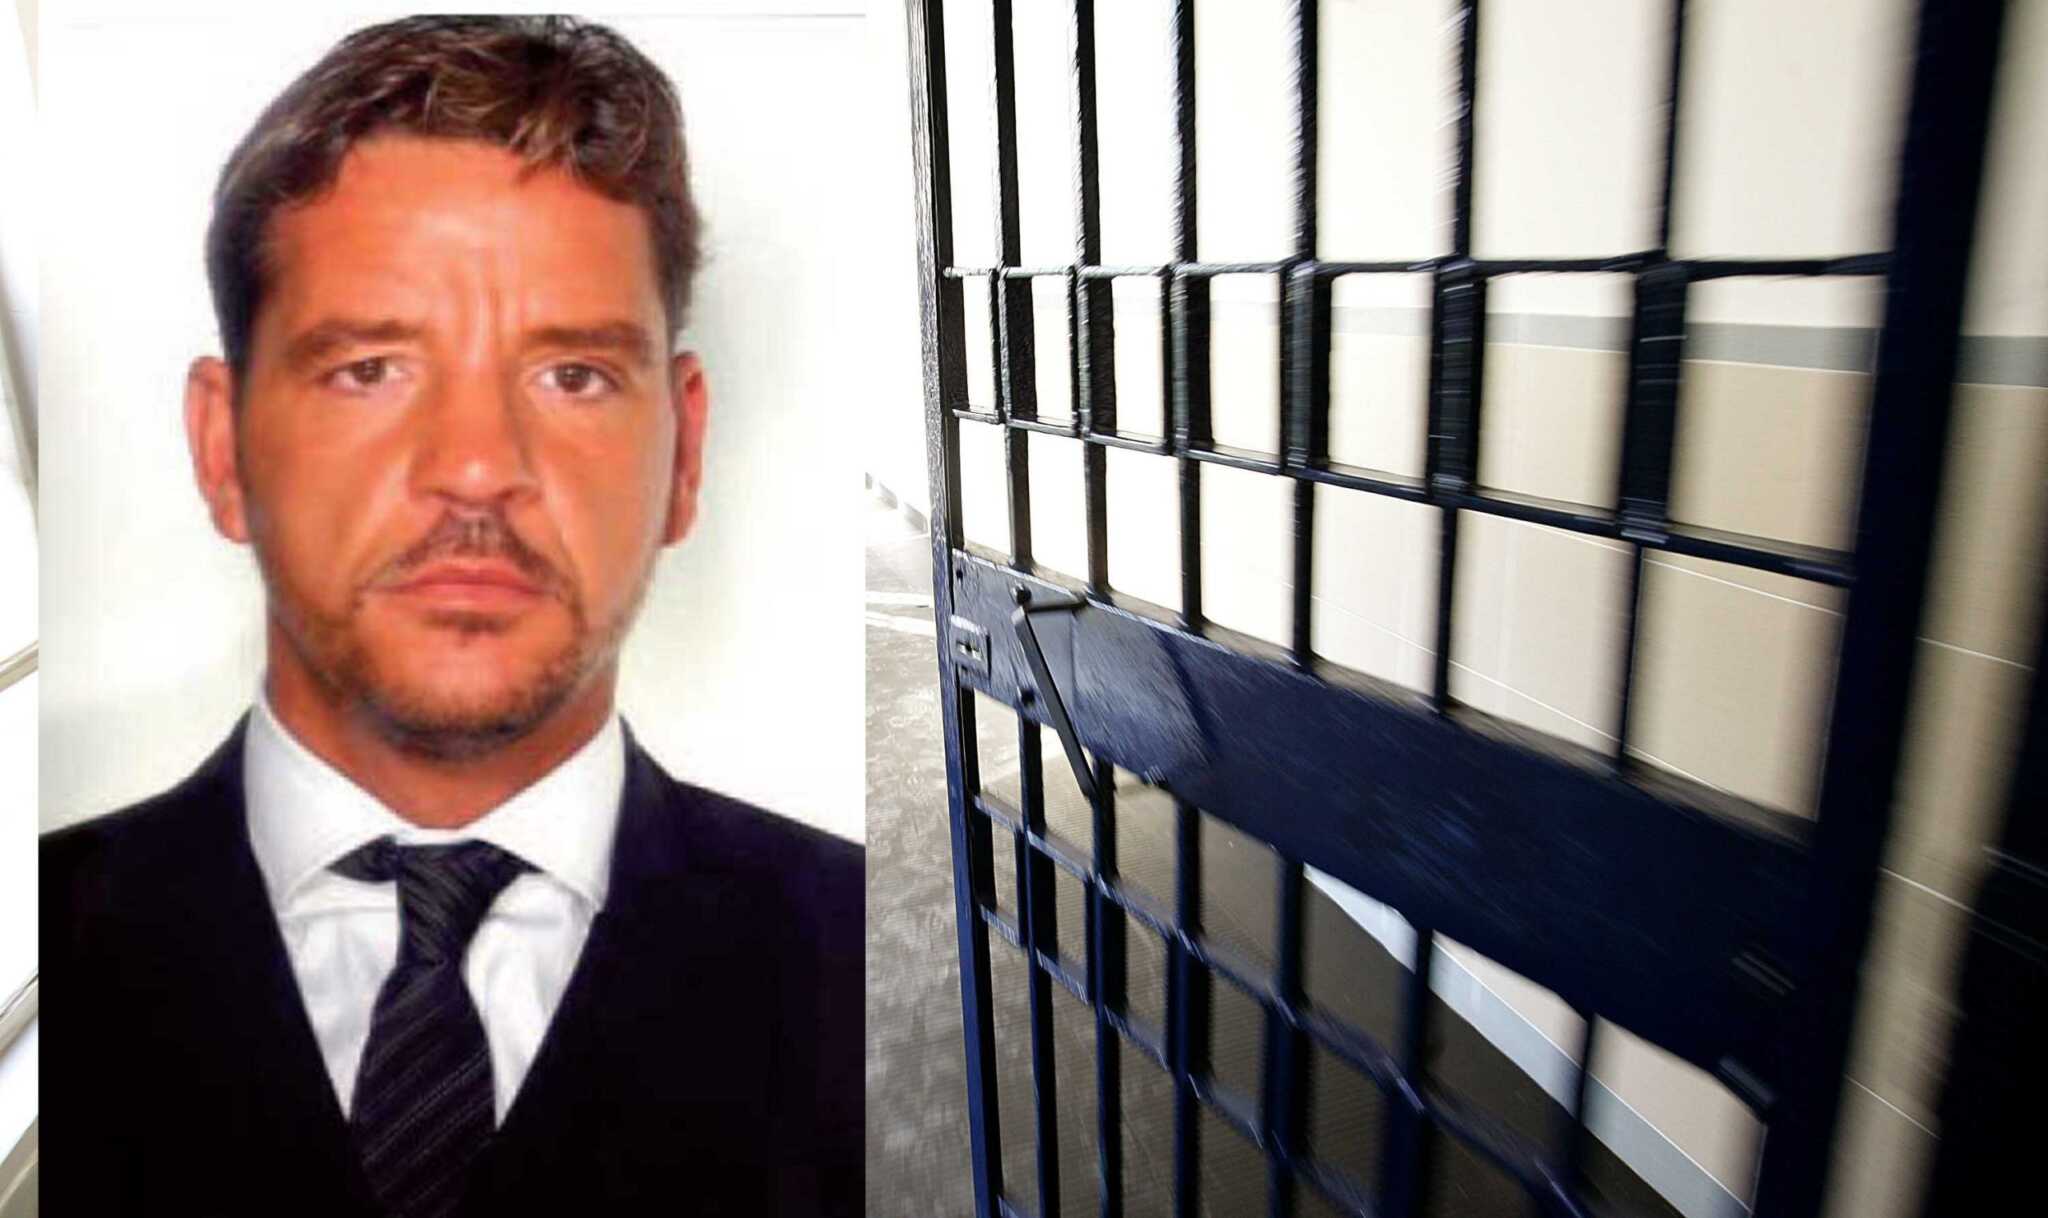 Napoli, il boss Rullo appena scarcerato fermato per traffico di droga